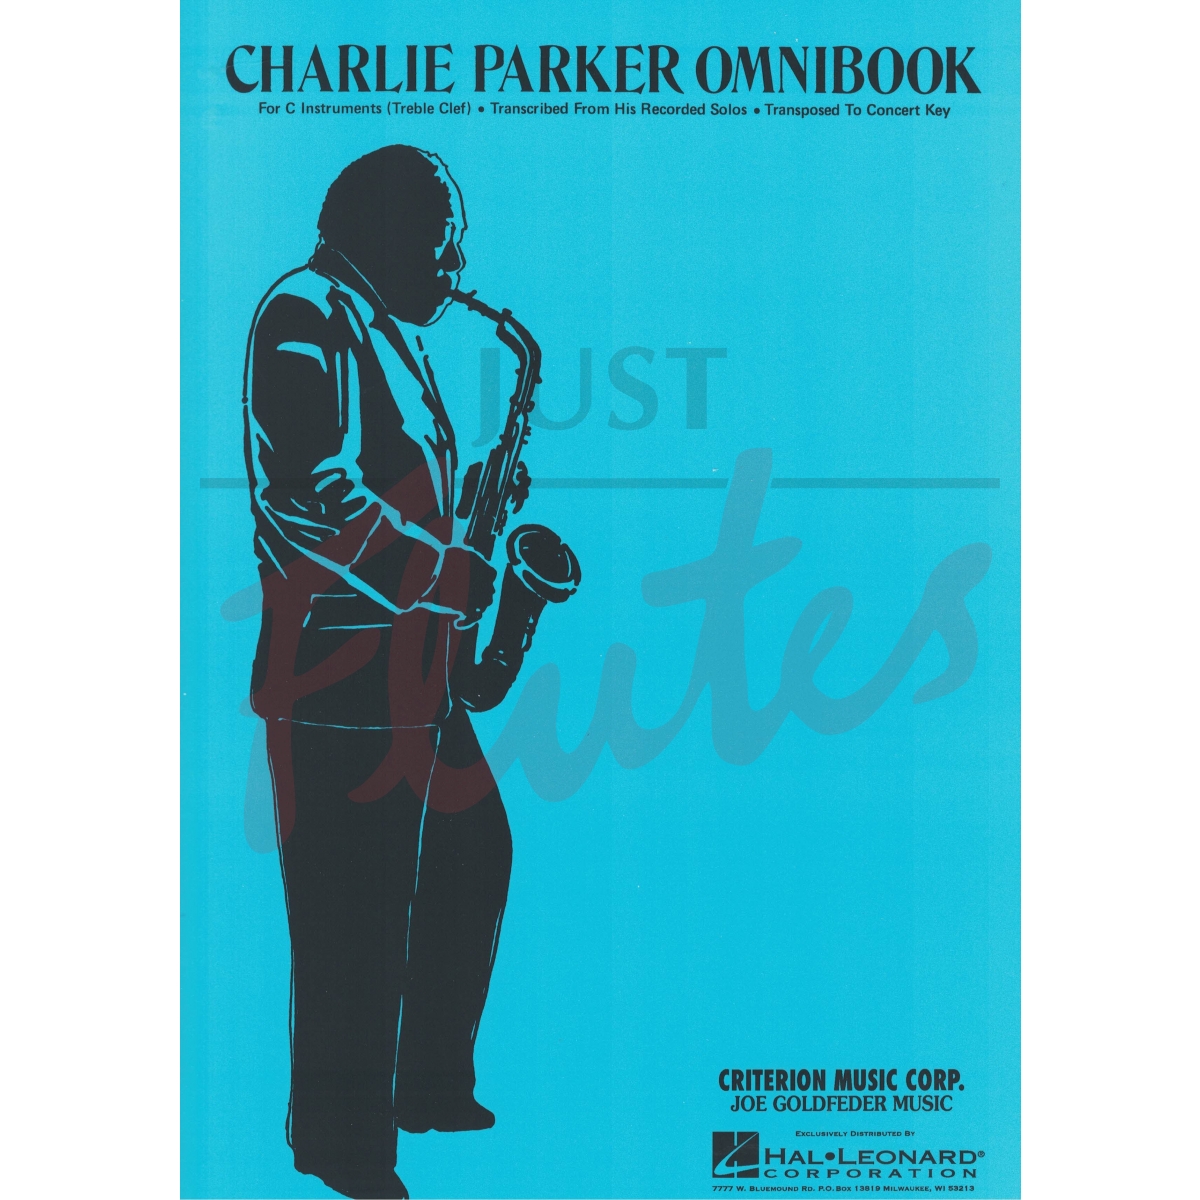 Charlie Parker Omnibook [C Instruments]